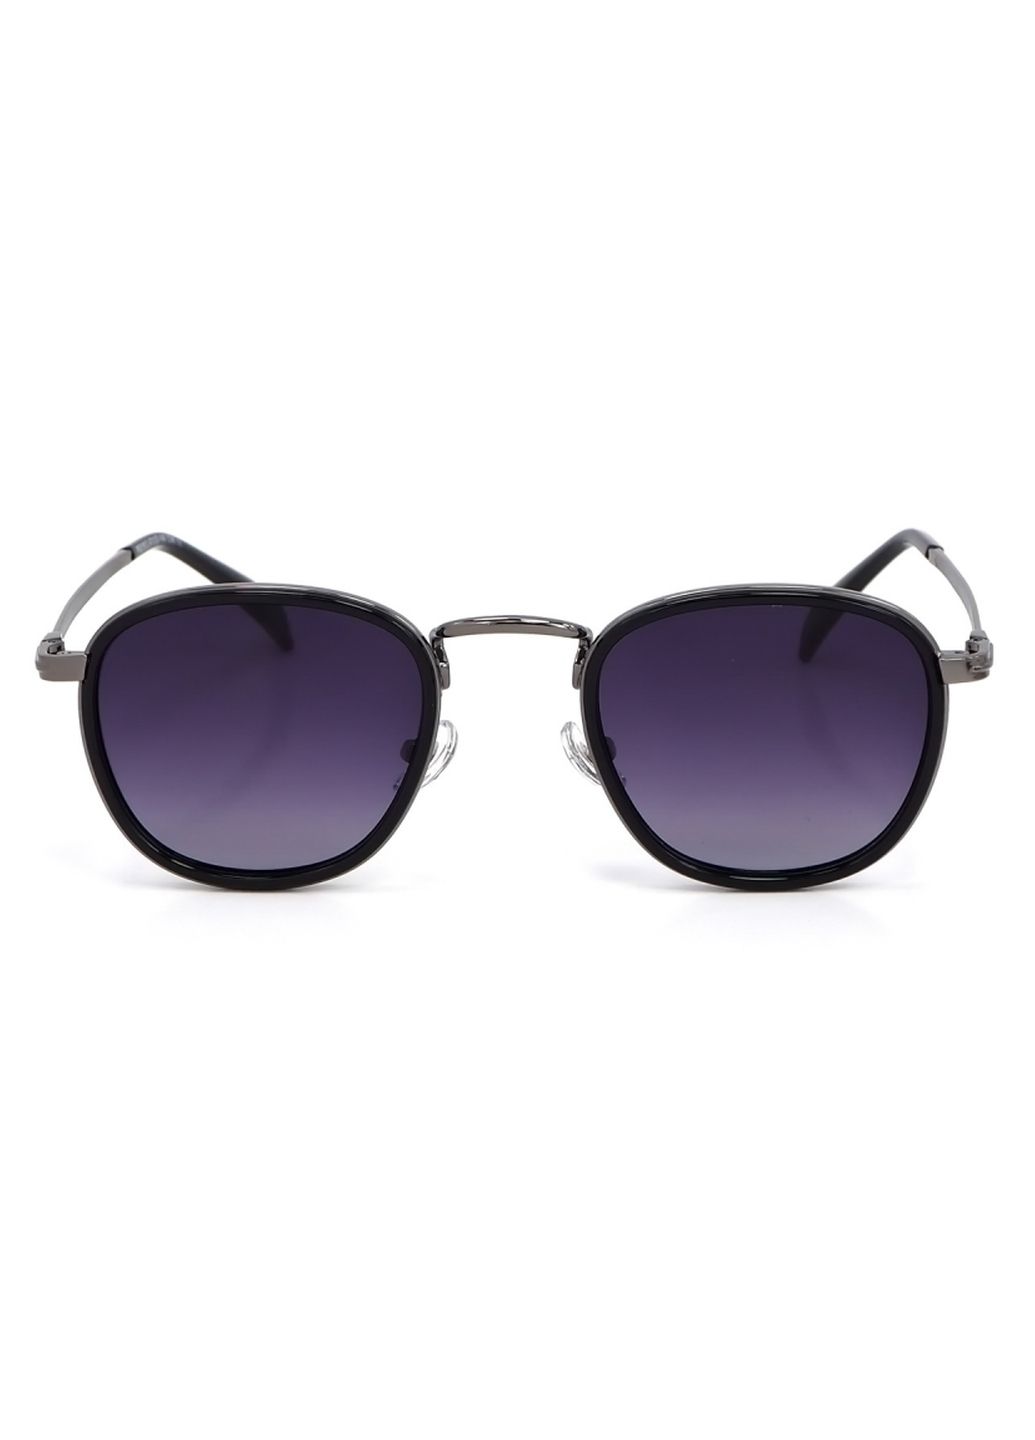 Купить Женские солнцезащитные очки Merlini с поляризацией S31812P 117025 - Черный в интернет-магазине